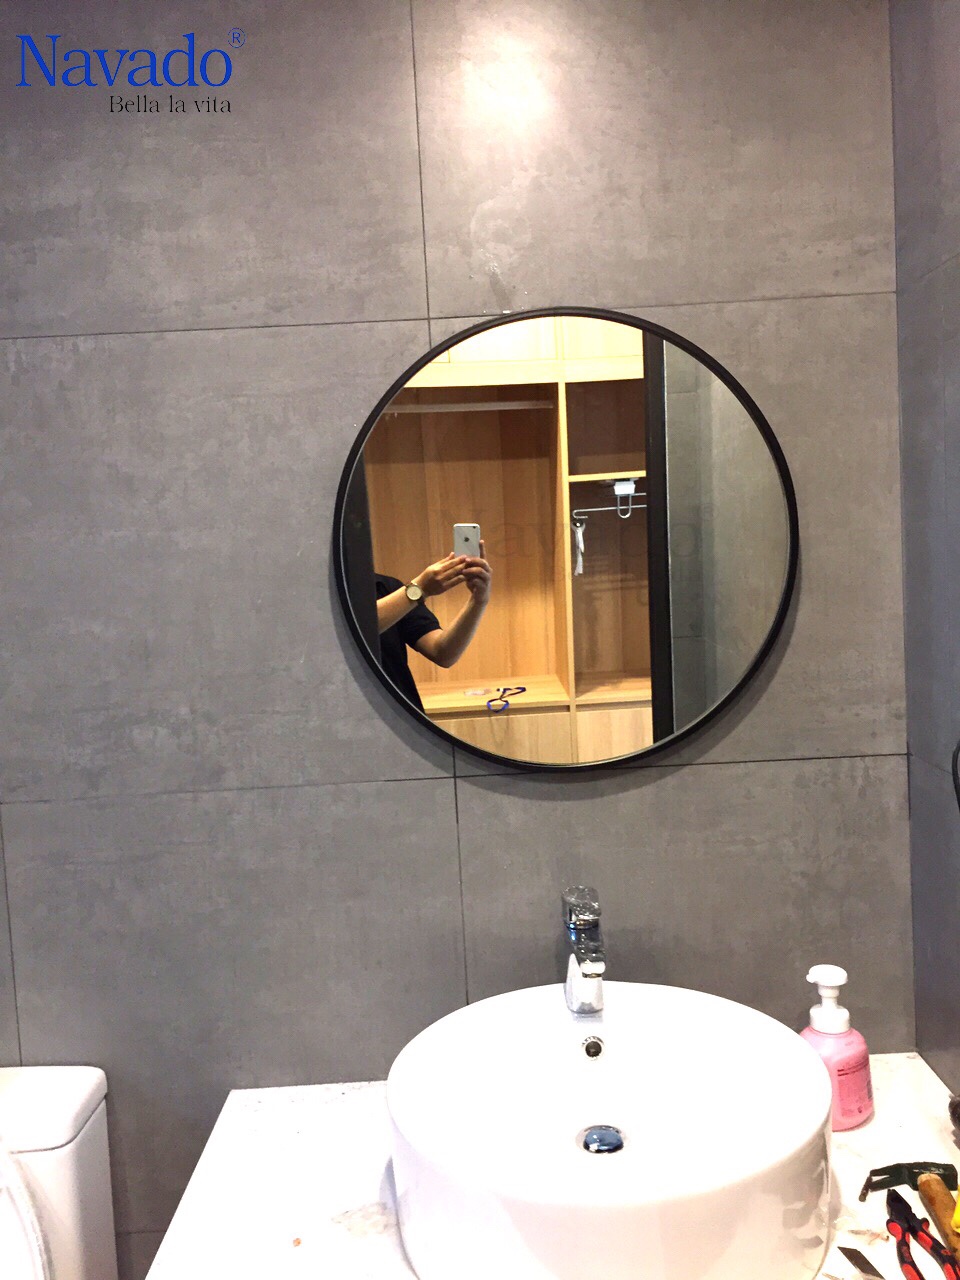 Nếu bạn đang tìm kiếm một chiếc gương tắm có kiểu dáng độc đáo, hãy thử xem hình ảnh chiếc gương treo nhà tắm có khung vành đen này. Với đường nét tinh tế và phá cách, chiếc gương này sẽ tạo ra một không gian tắm sang trọng và đẳng cấp. Đừng bỏ qua cơ hội chiêm ngưỡng chiếc gương tuyệt đẹp này!